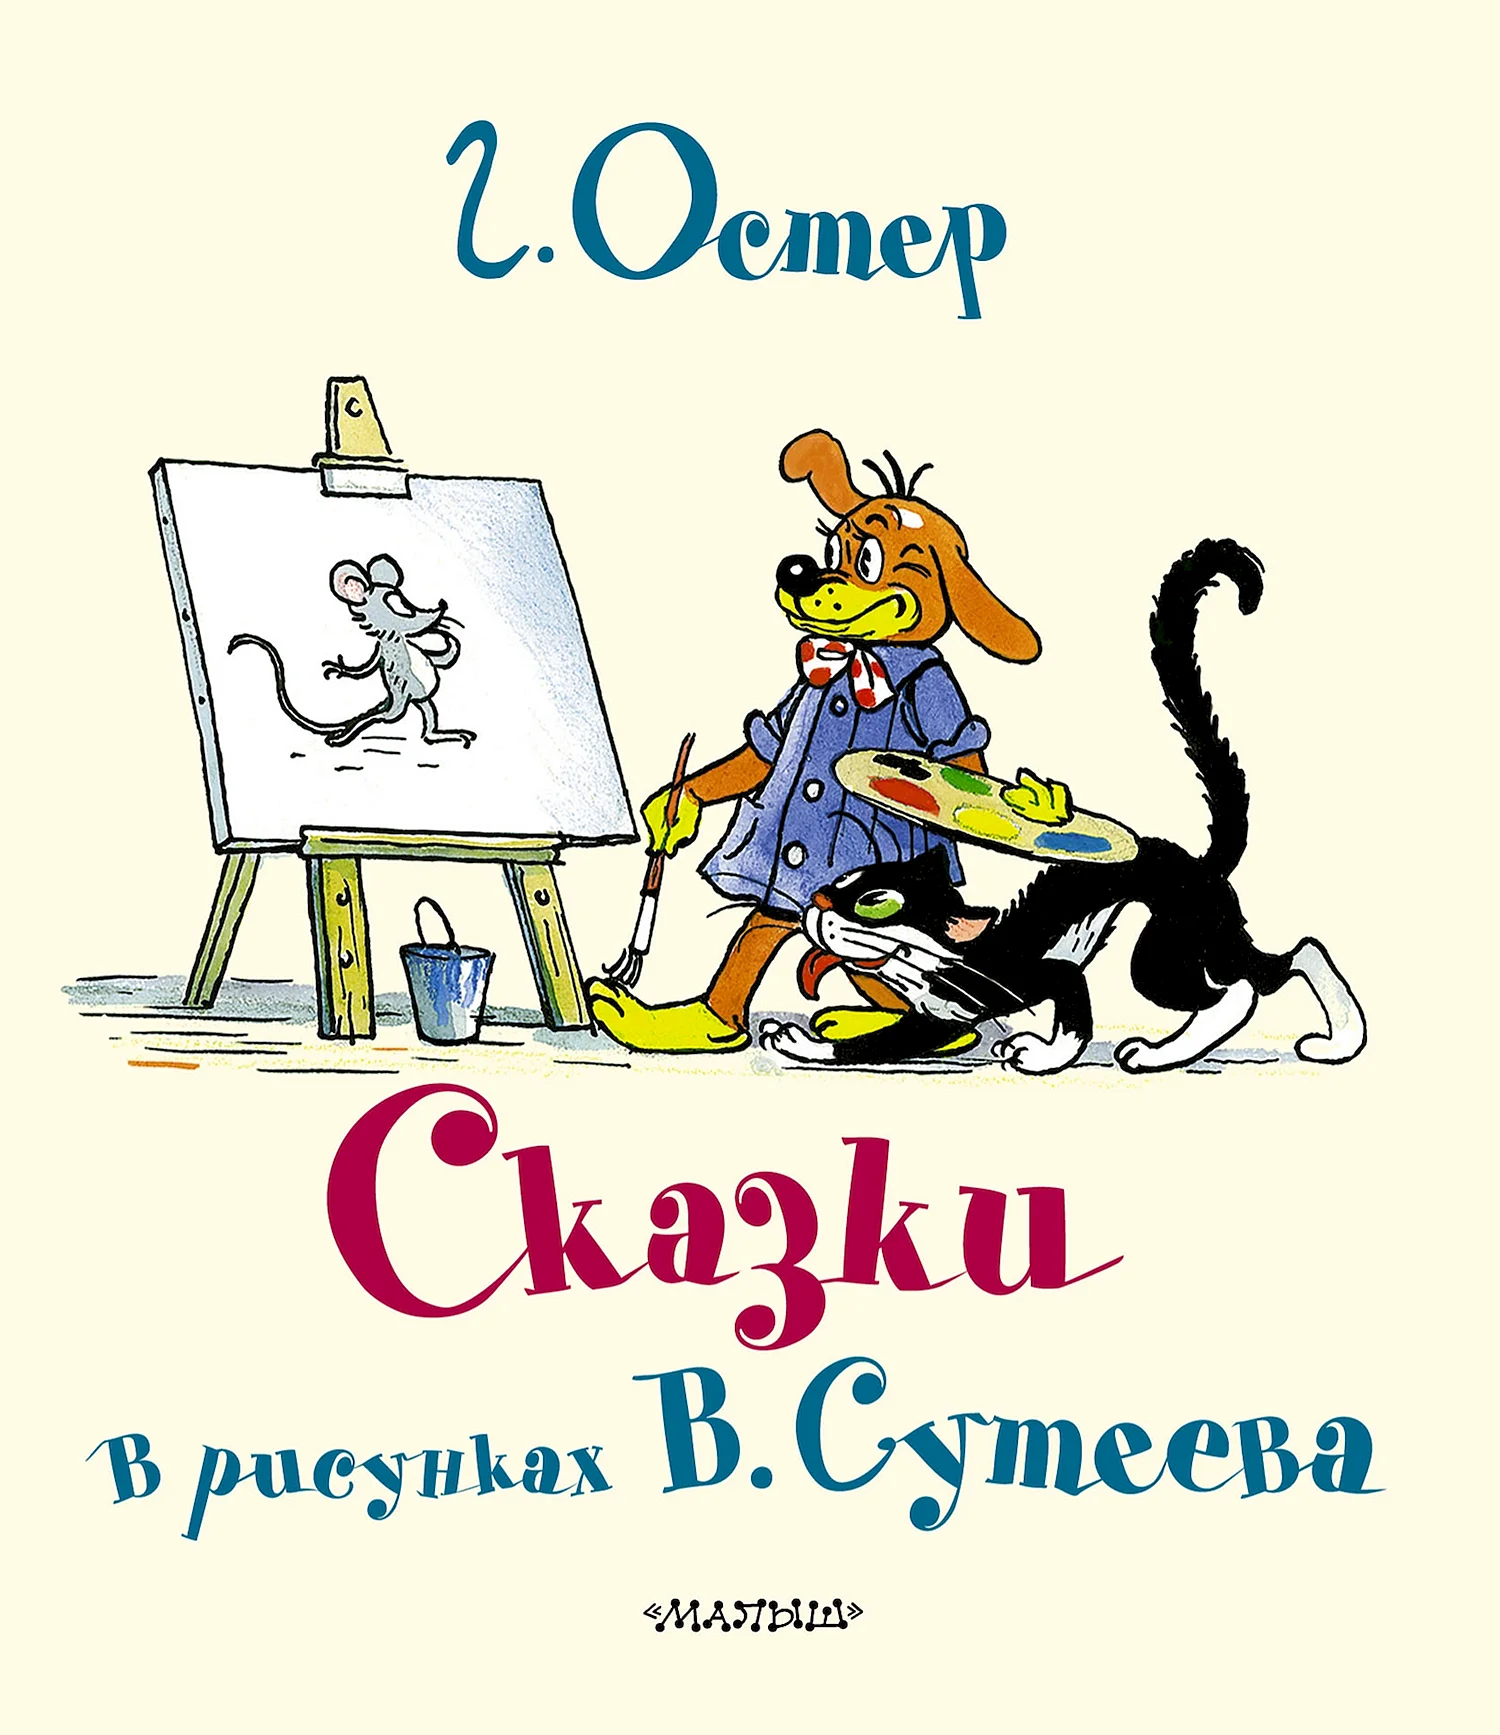 Иллюстрации Сутеева к произведениям других авторов